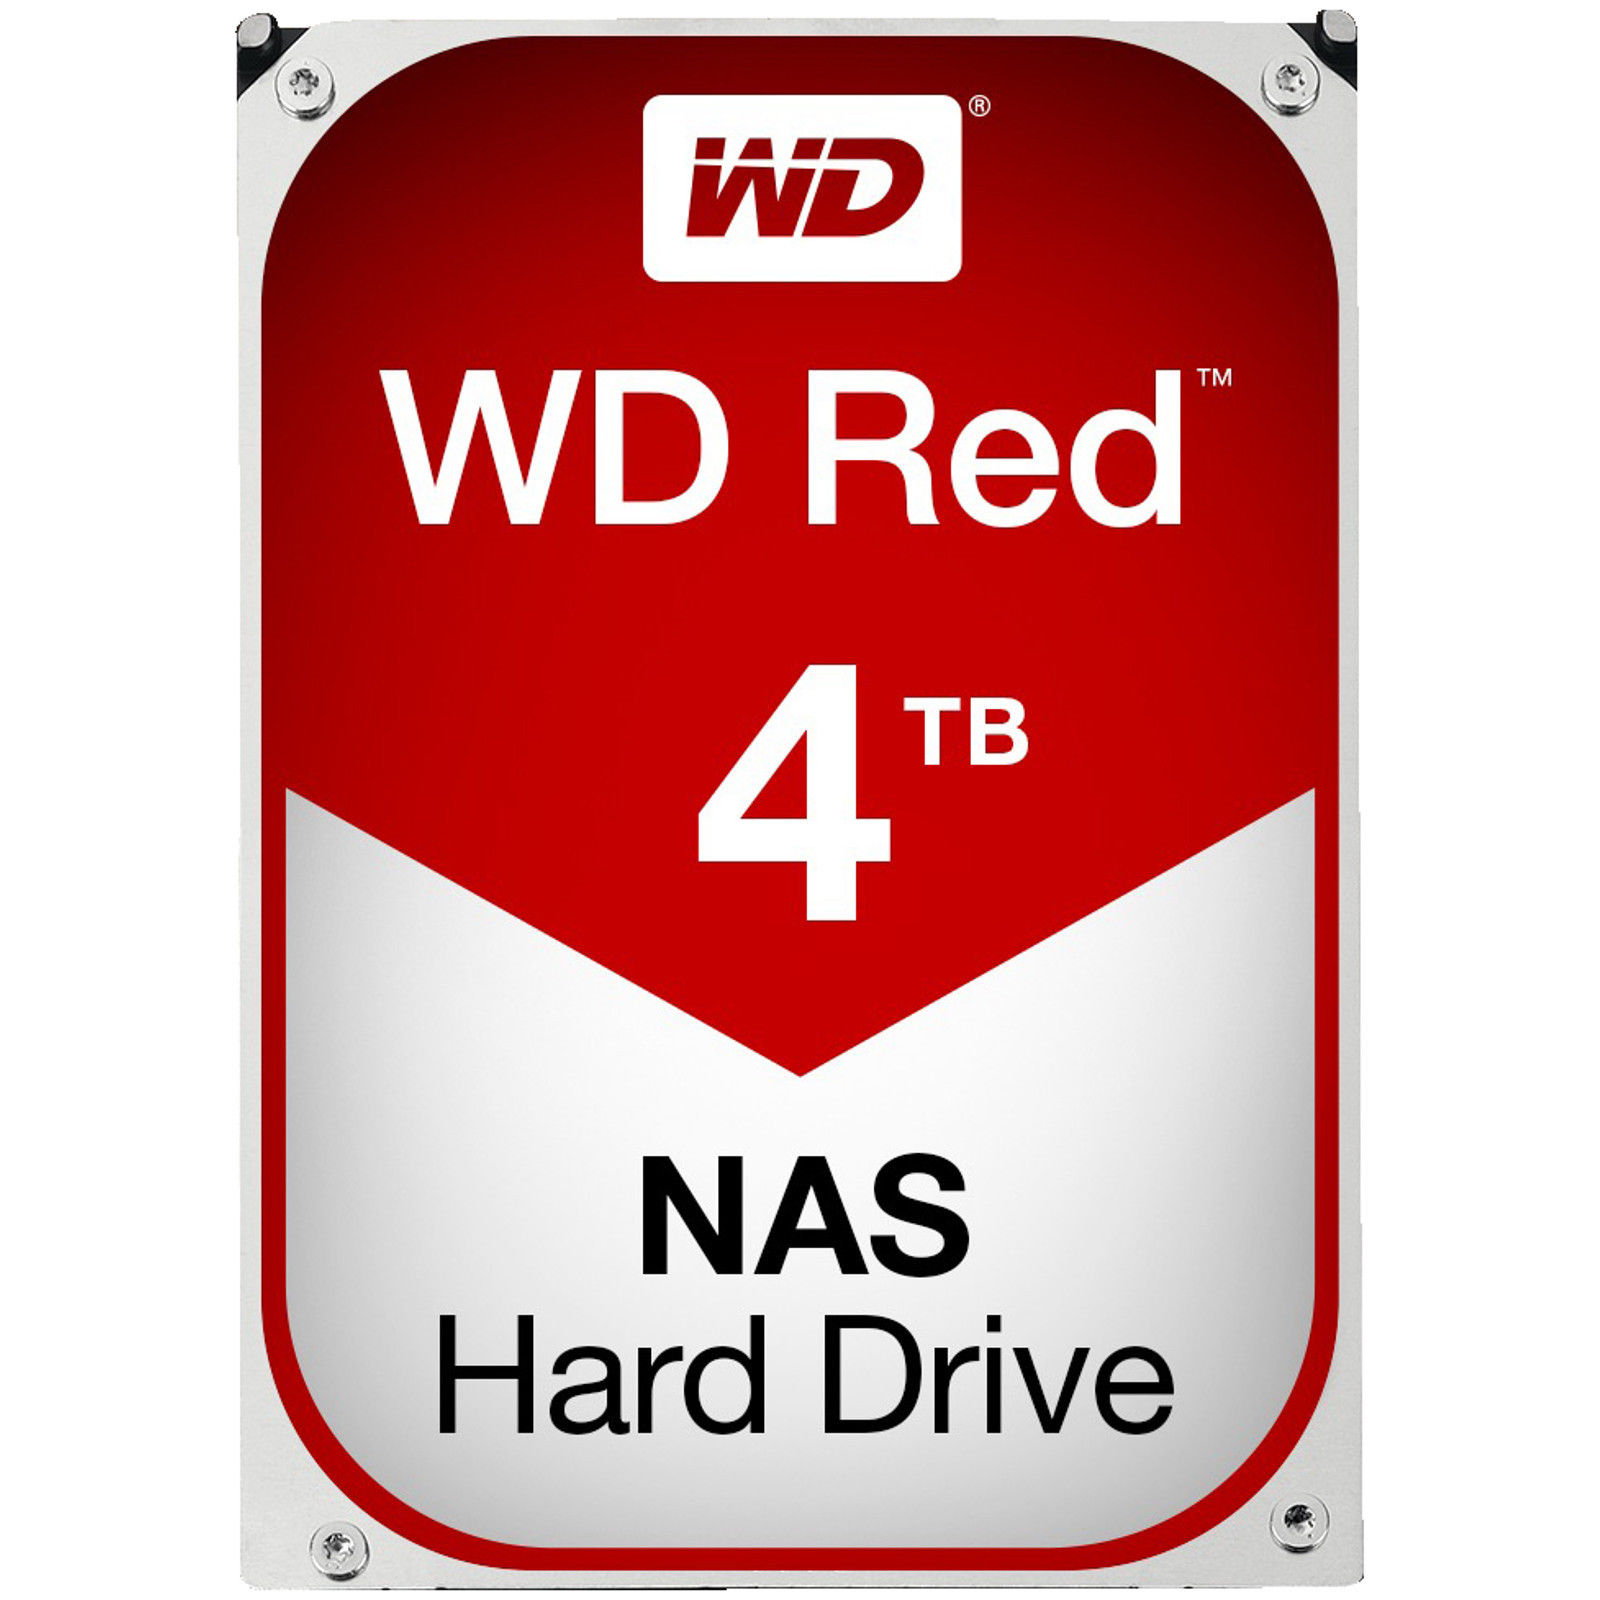 Bild zu Interne 3,5 Zoll Festplatte Western Digital Red (4 TB) für 139€